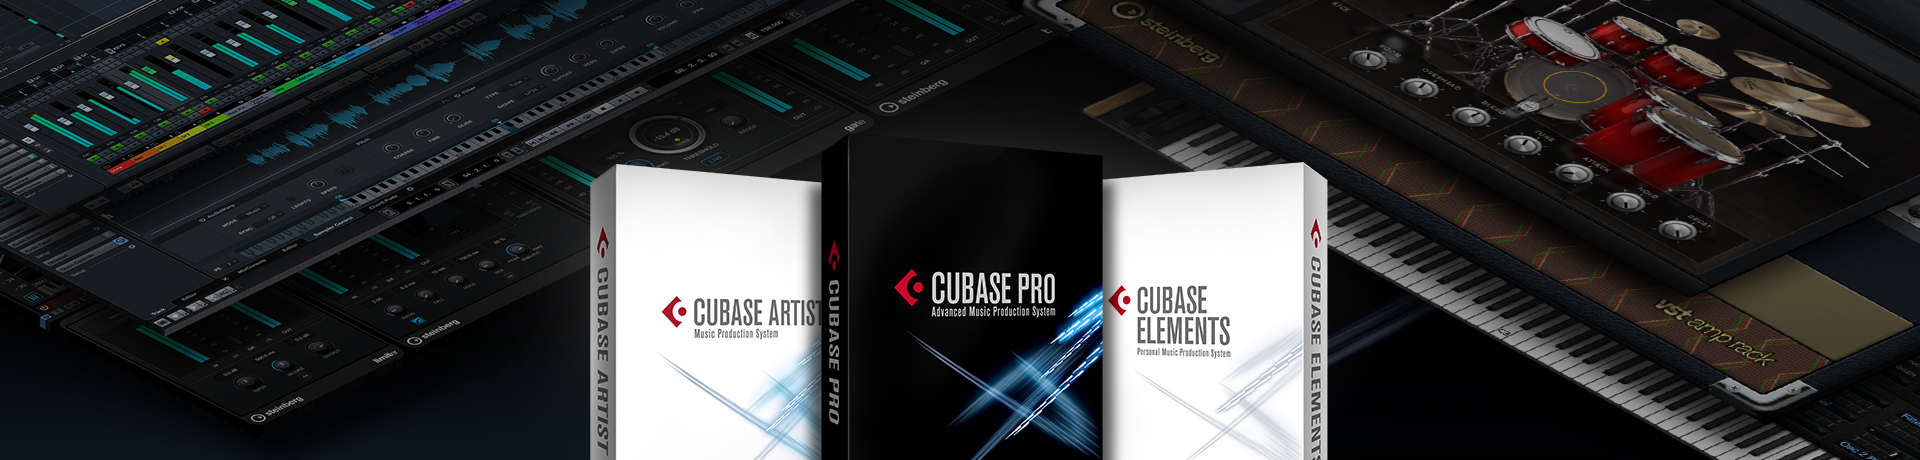 cubase elements 9.5 trial